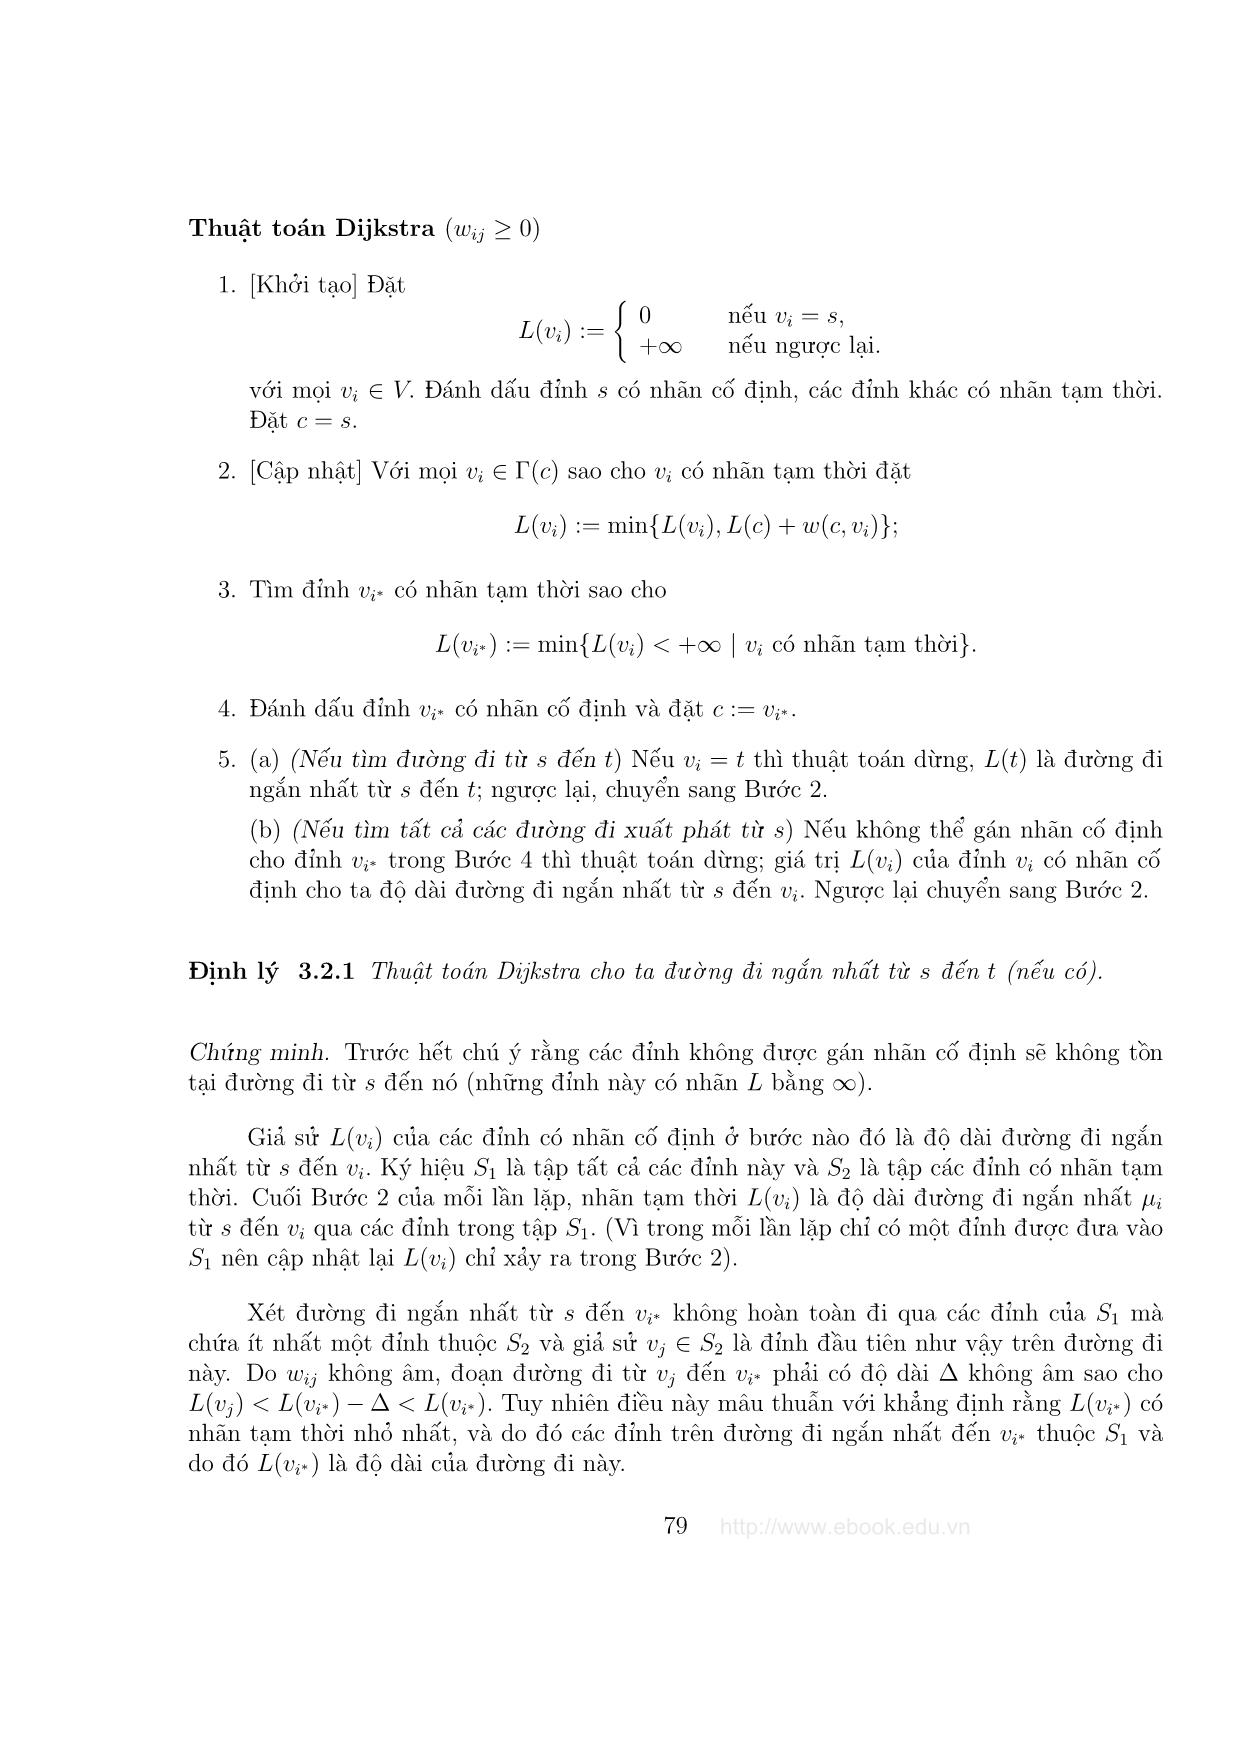 Giáo trình Đồ thị và các thuật toán - Chương 3: Các bài toán về đường đi trang 5